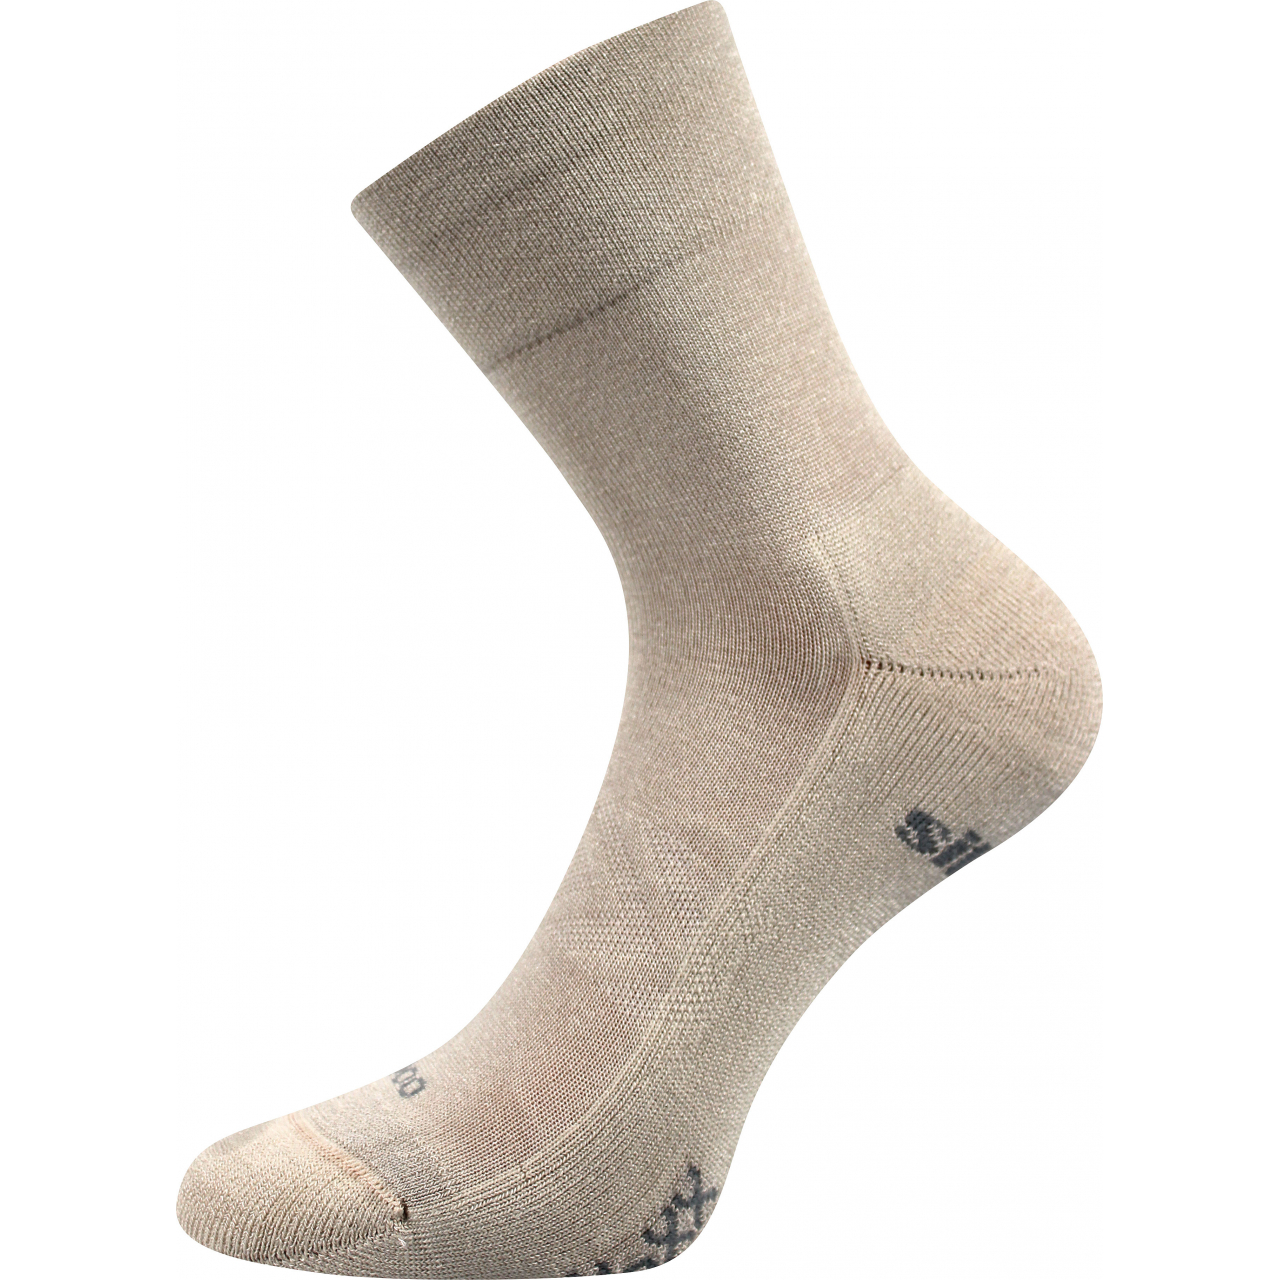 Ponožky sportovní unisex Voxx Esencis - béžové, 39-42